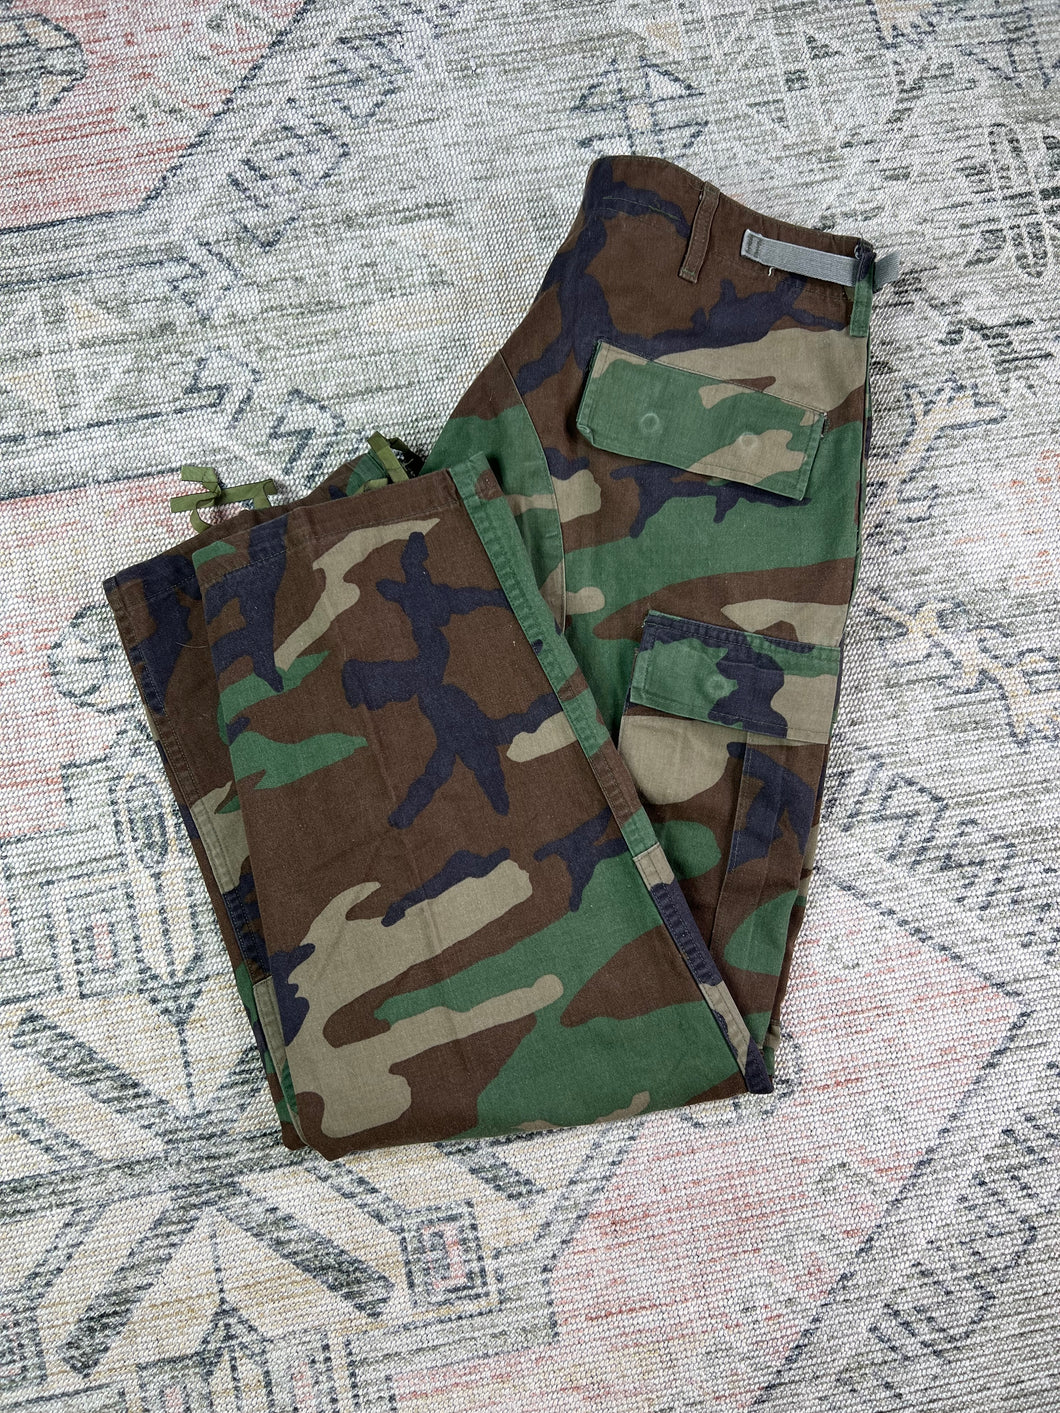 Adjustable Camo Military Pants (34x29)